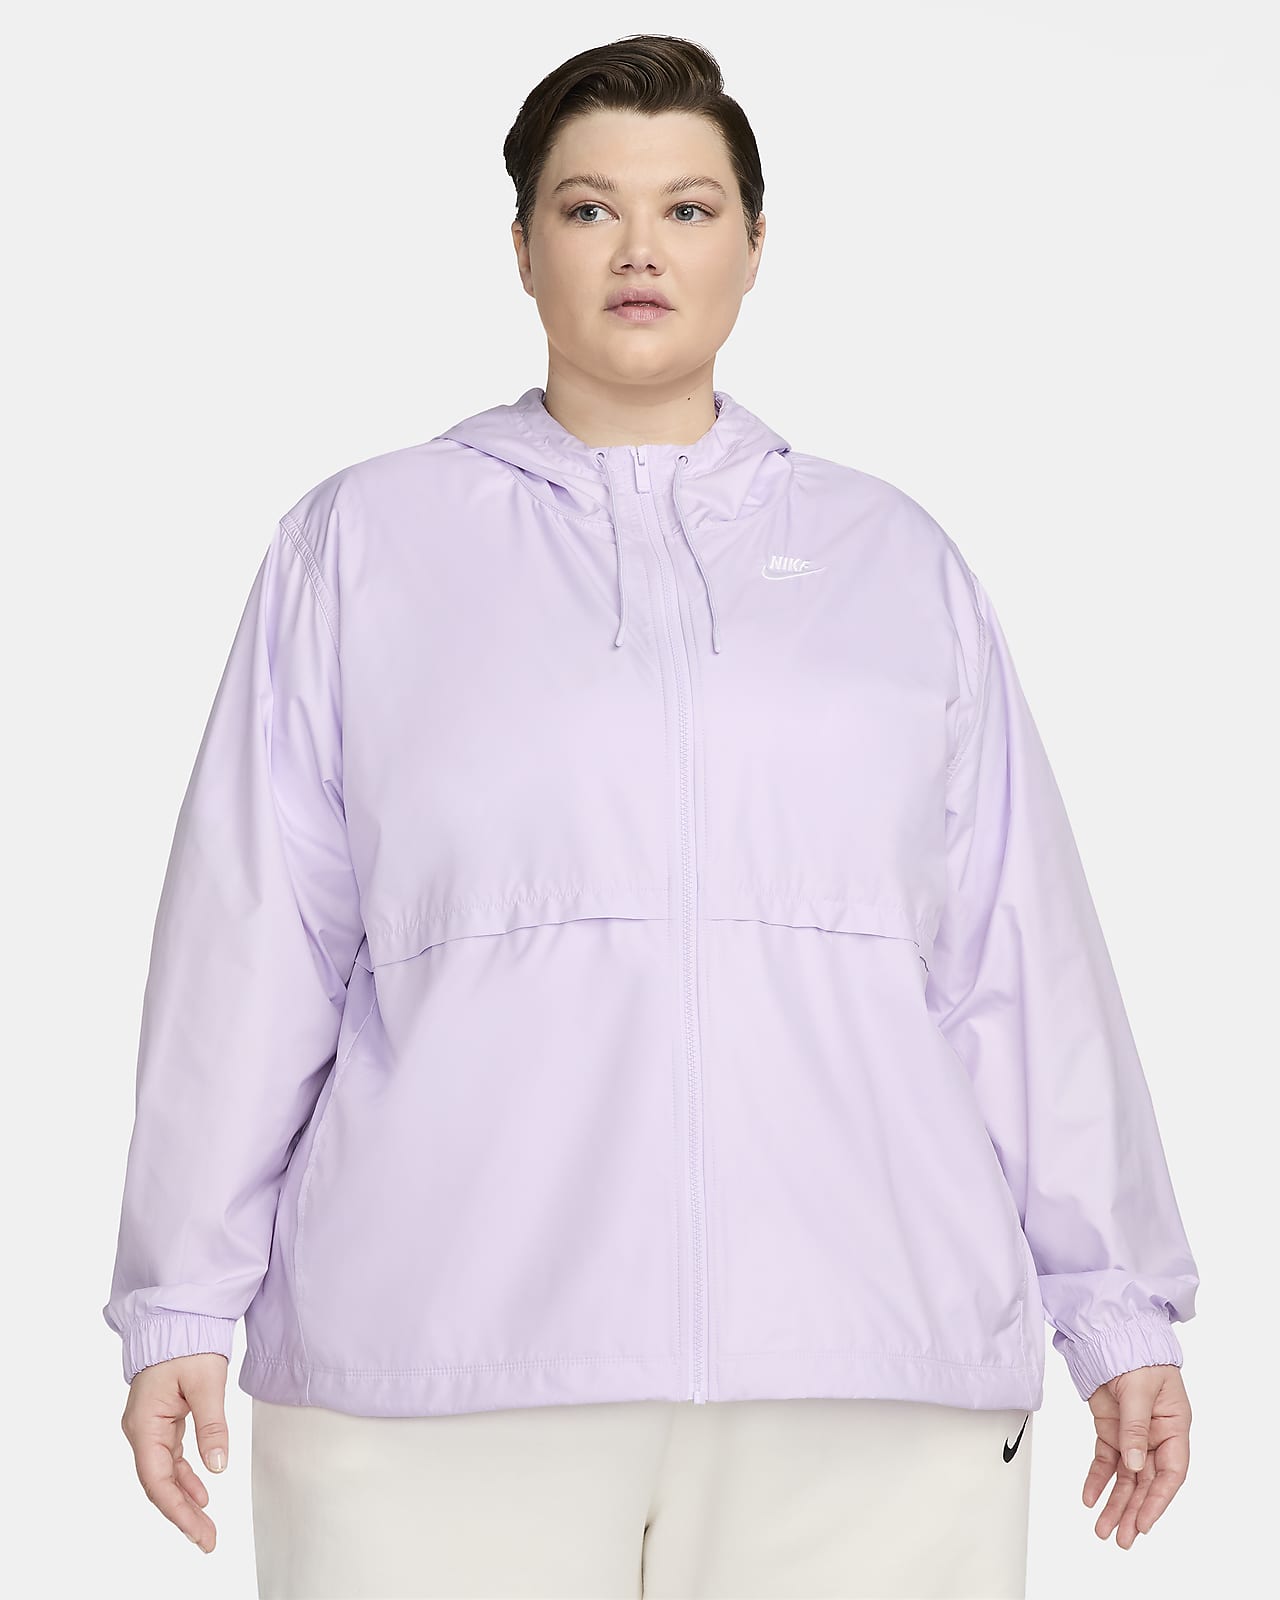 Nike Sportswear Essential Repel Woven Jacket - Women's 